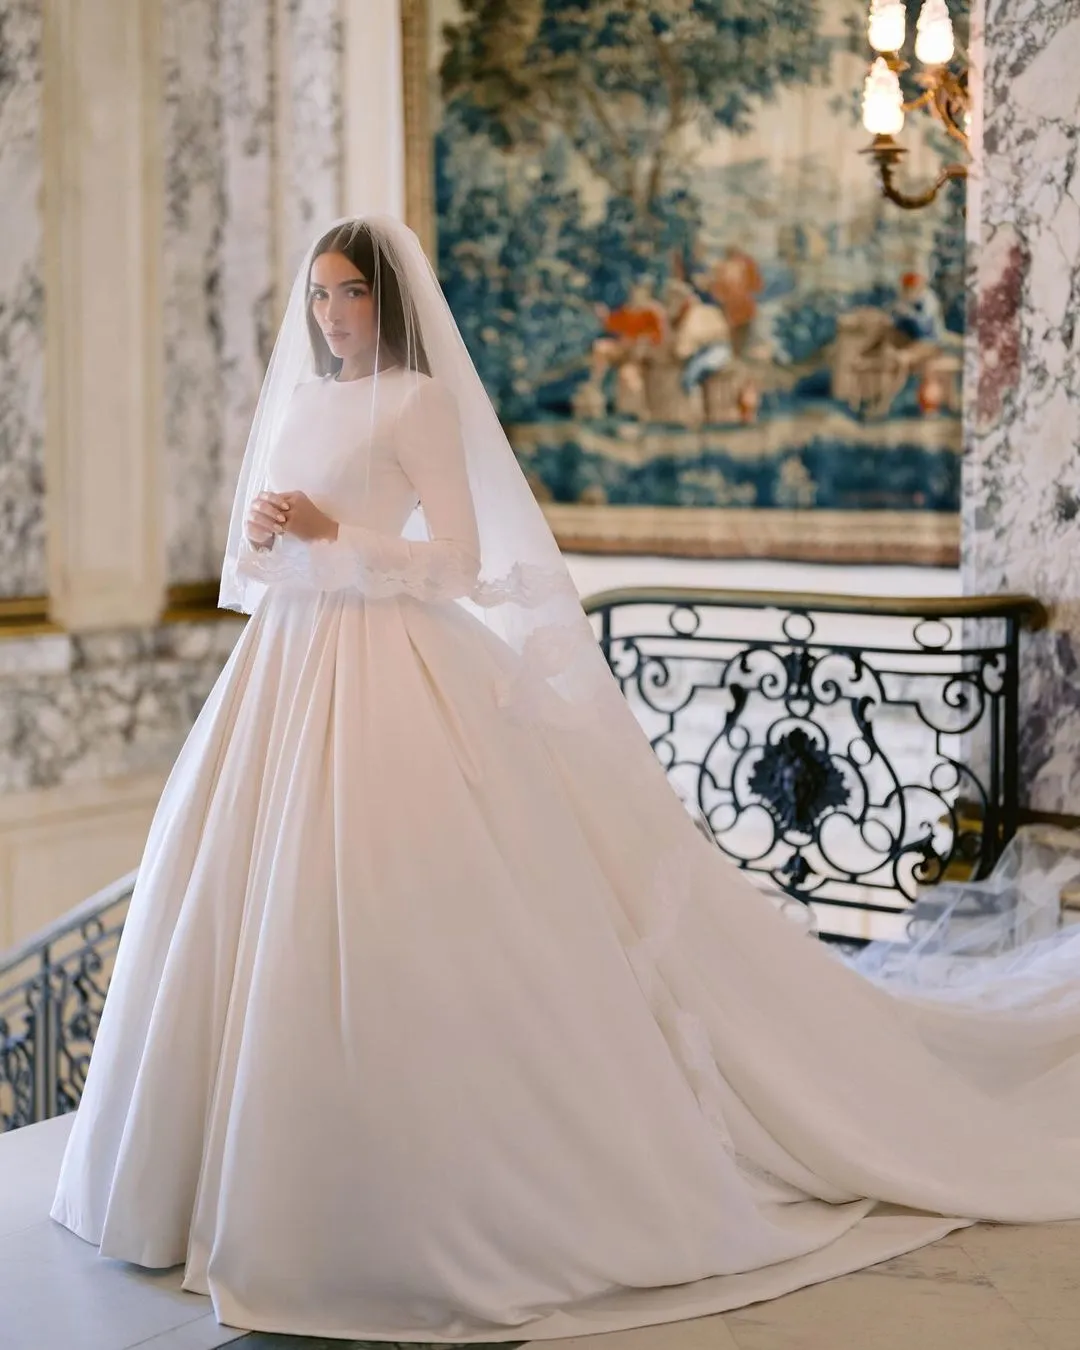 "Міс Всесвіт-2012" вийшла заміж за футболіста: який вигляд мала весільна сукня Олівії Калпо. Фото